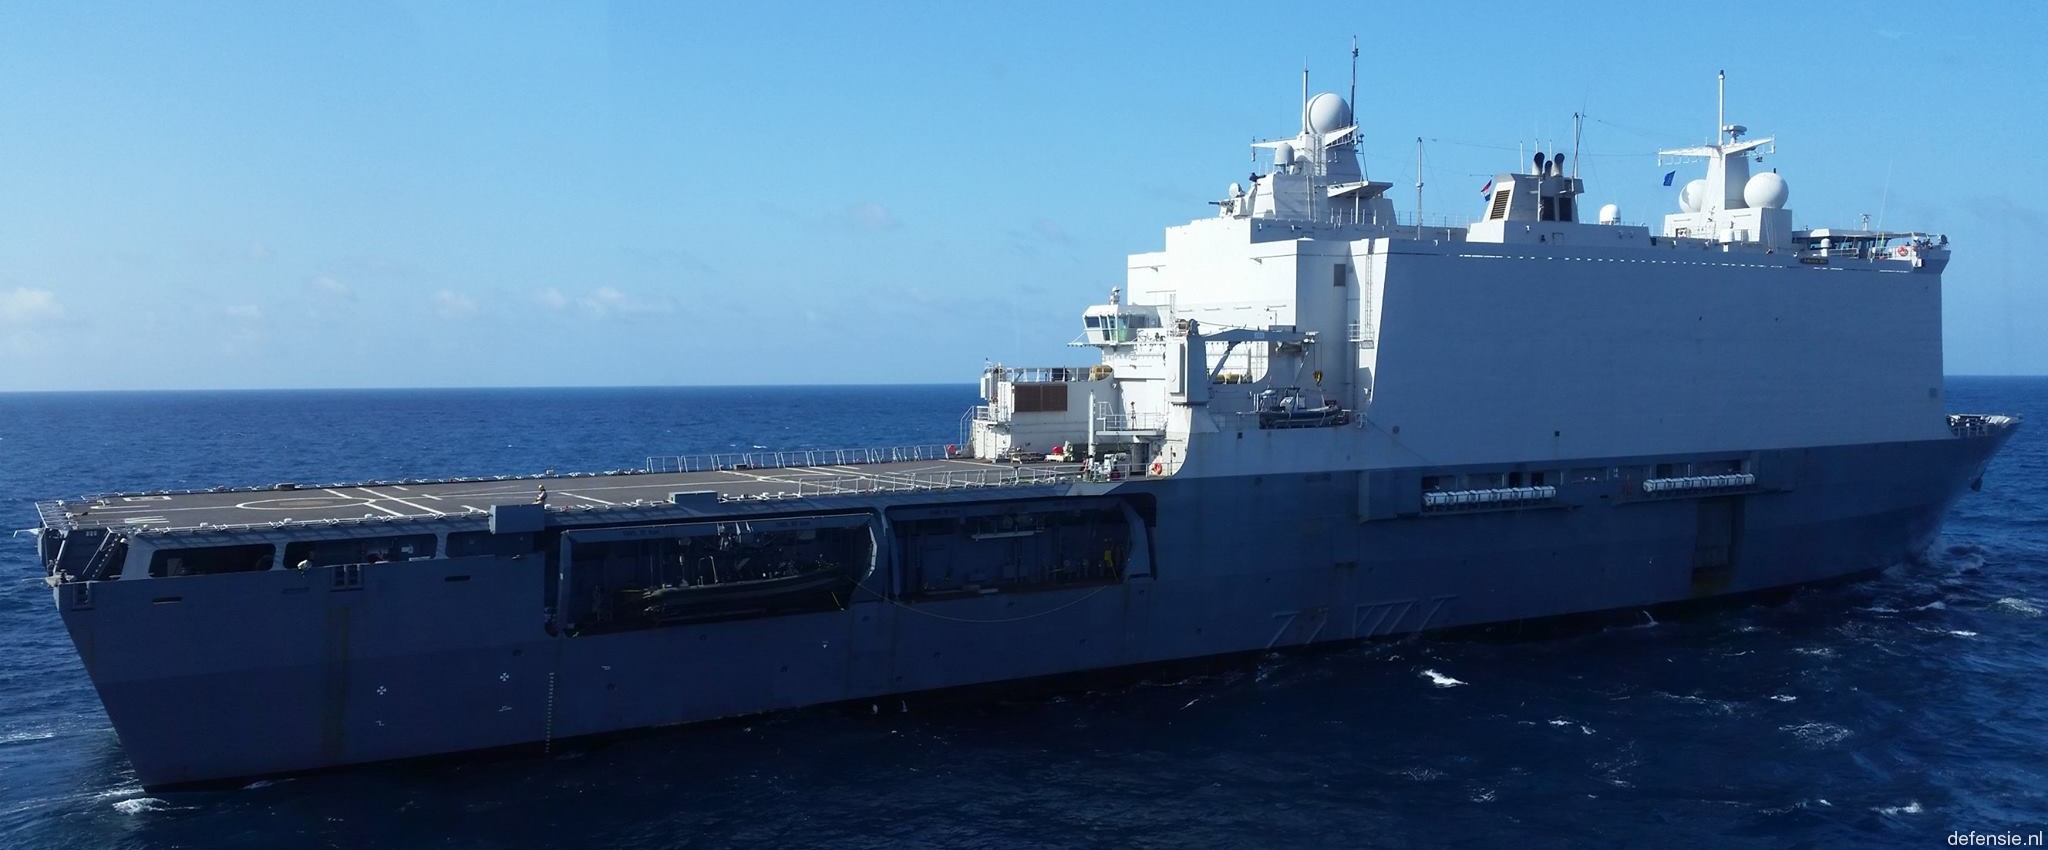 l-801 hnlms johan de witt amphibious ship landing platform dock lpd royal netherlands navy 36 flight deck helicopter